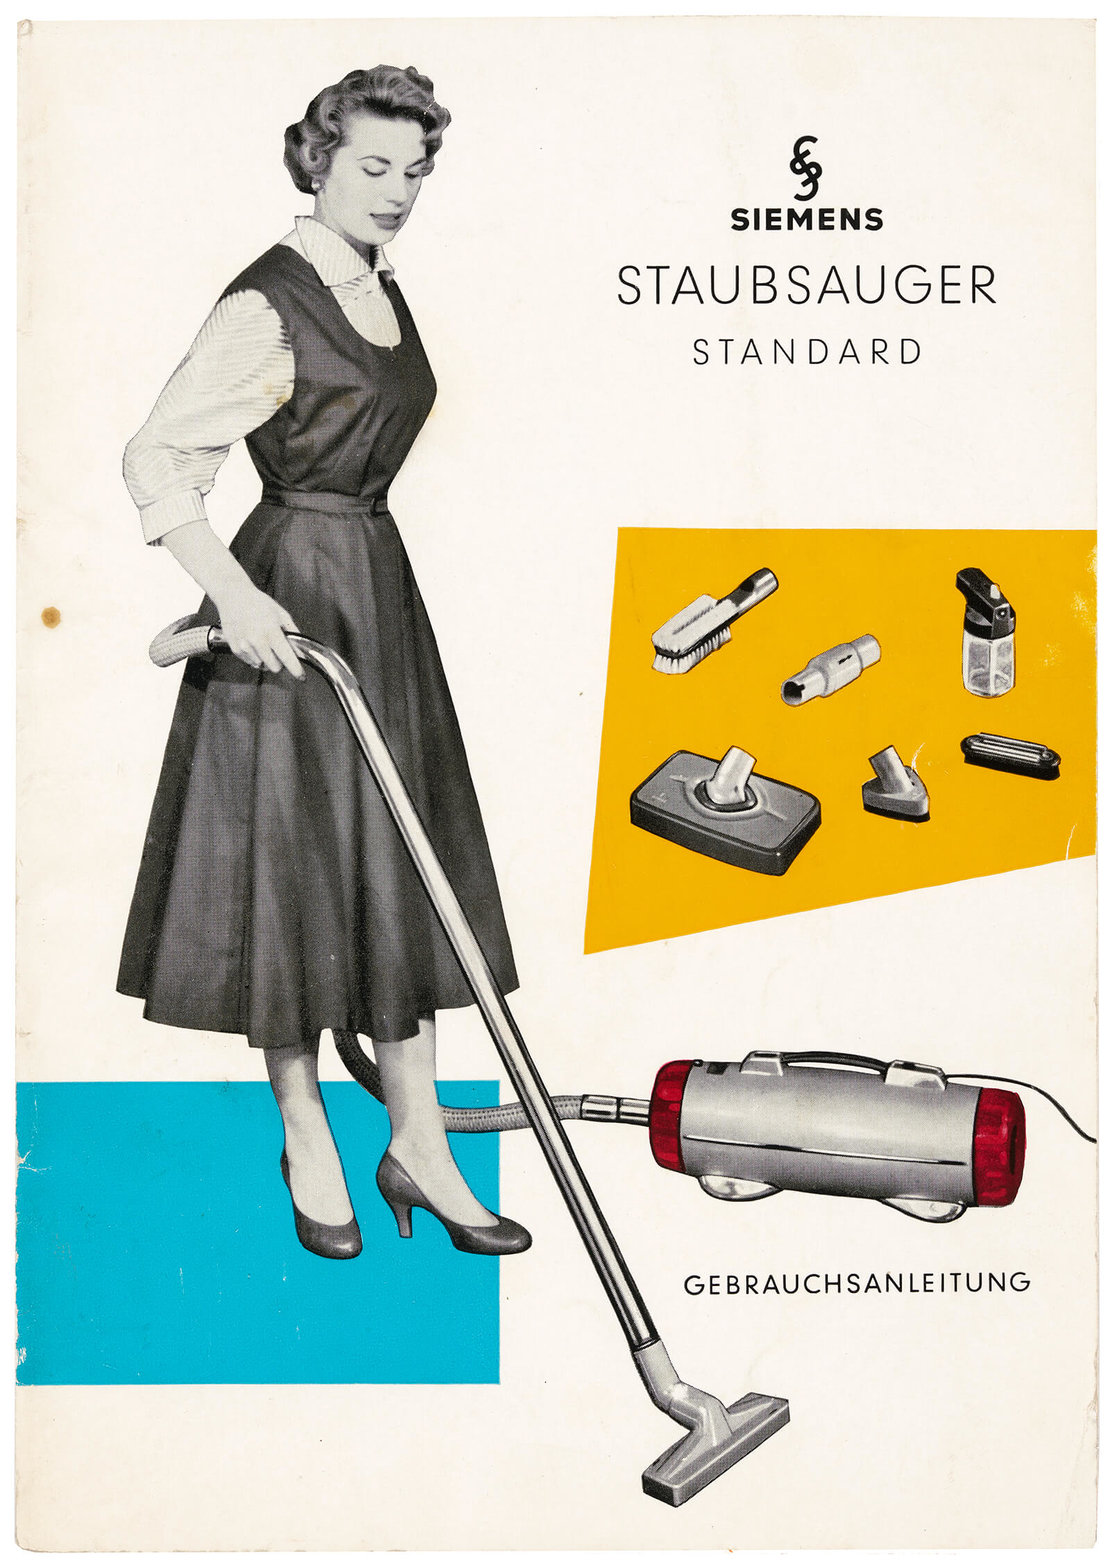 Bedienungsanleitung für Siemens-Staubsauger, 1950er Jahre, Wien Museum, Inv.-Nr. 248423/3 